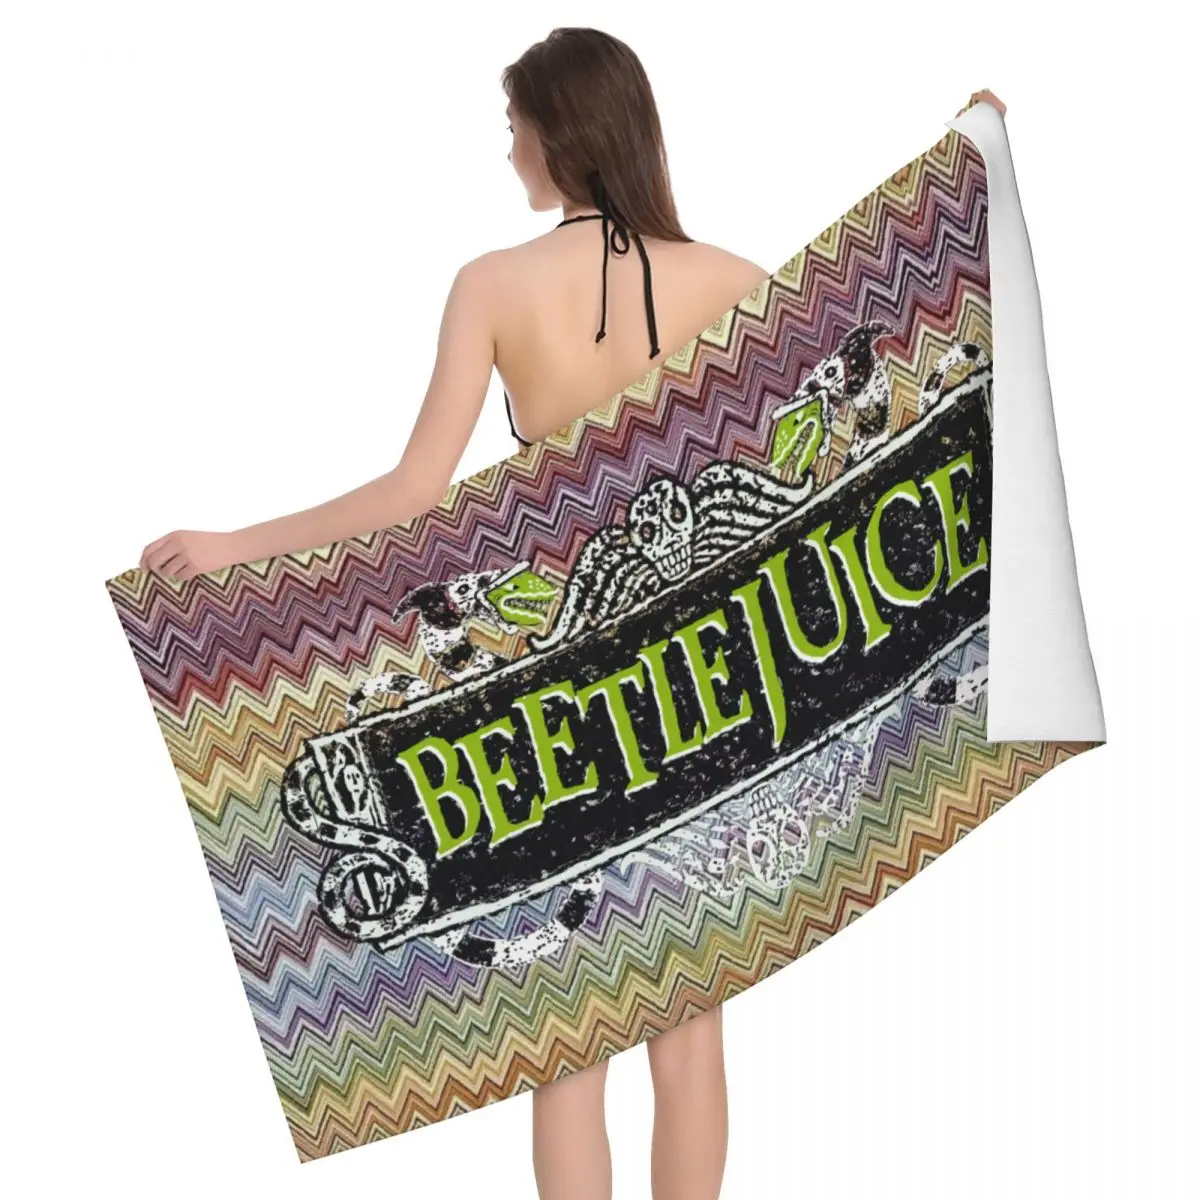 

Пляжное банное полотенце из микрофибры от Beetlejuice с изображением фильма ужасов, дорожные полотенца для плавания и кемпинга